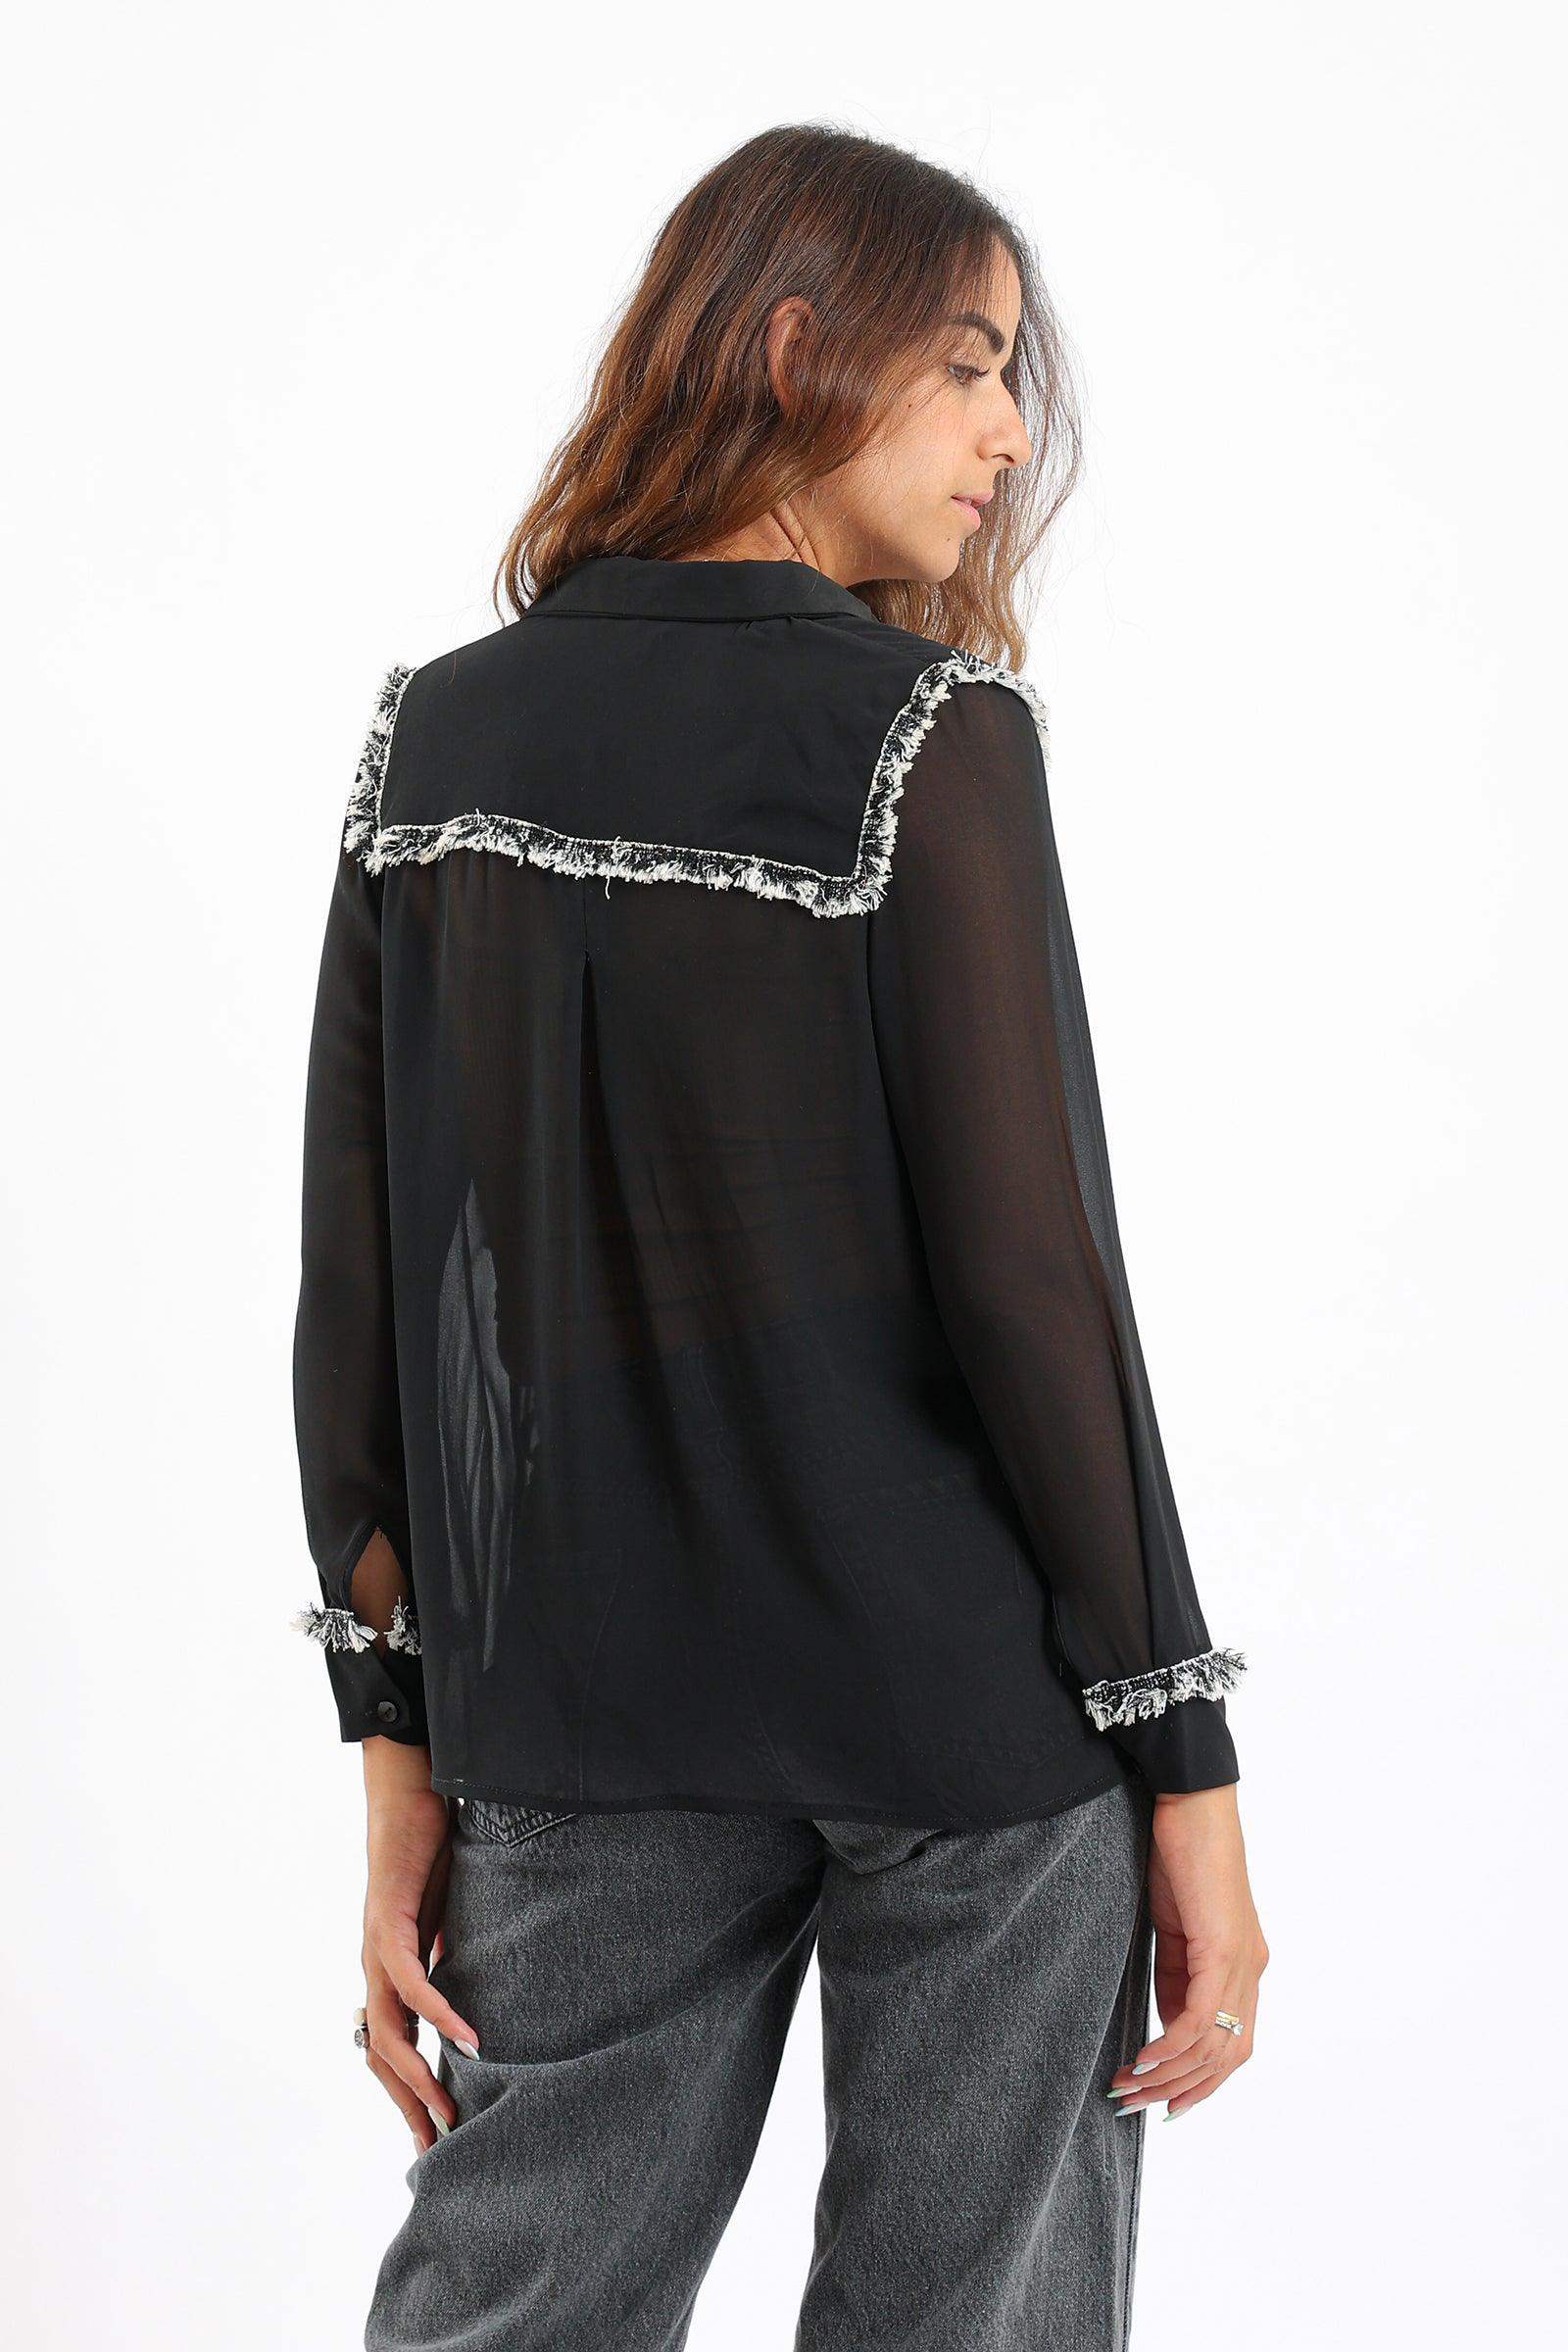 Embellished Black Shirt - Carina - كارينا